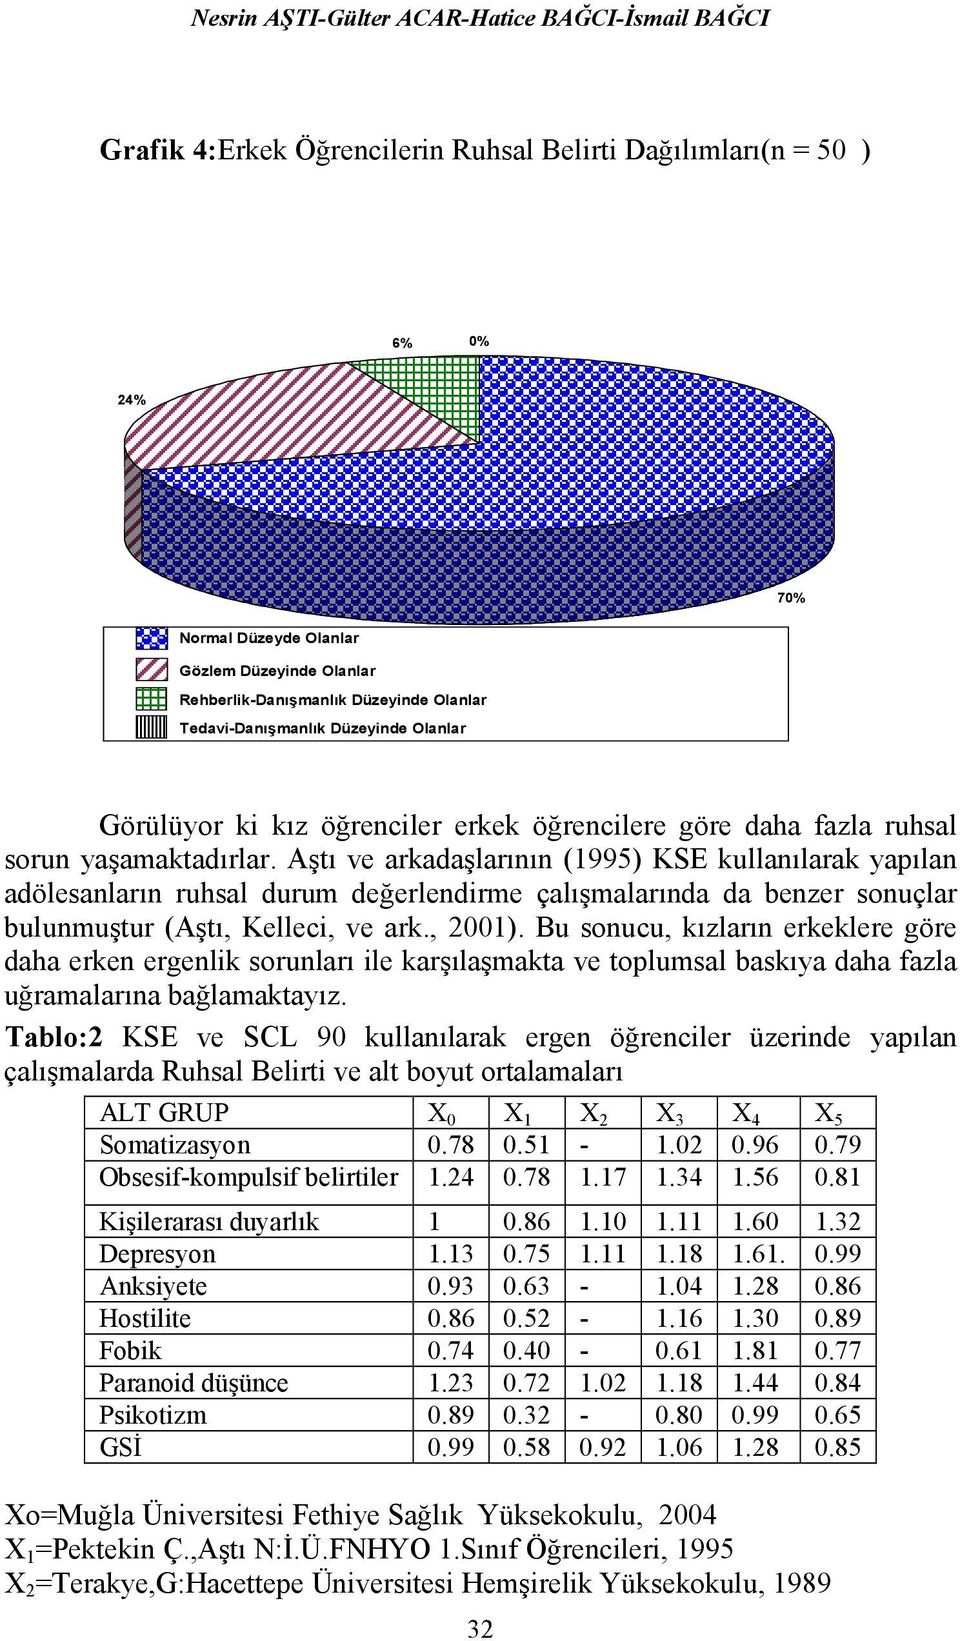 Aştı ve arkadaşlarının (1995) KSE kullanılarak yapılan adölesanların ruhsal durum değerlendirme çalışmalarında da benzer sonuçlar bulunmuştur (Aştı, Kelleci, ve ark., 2001).